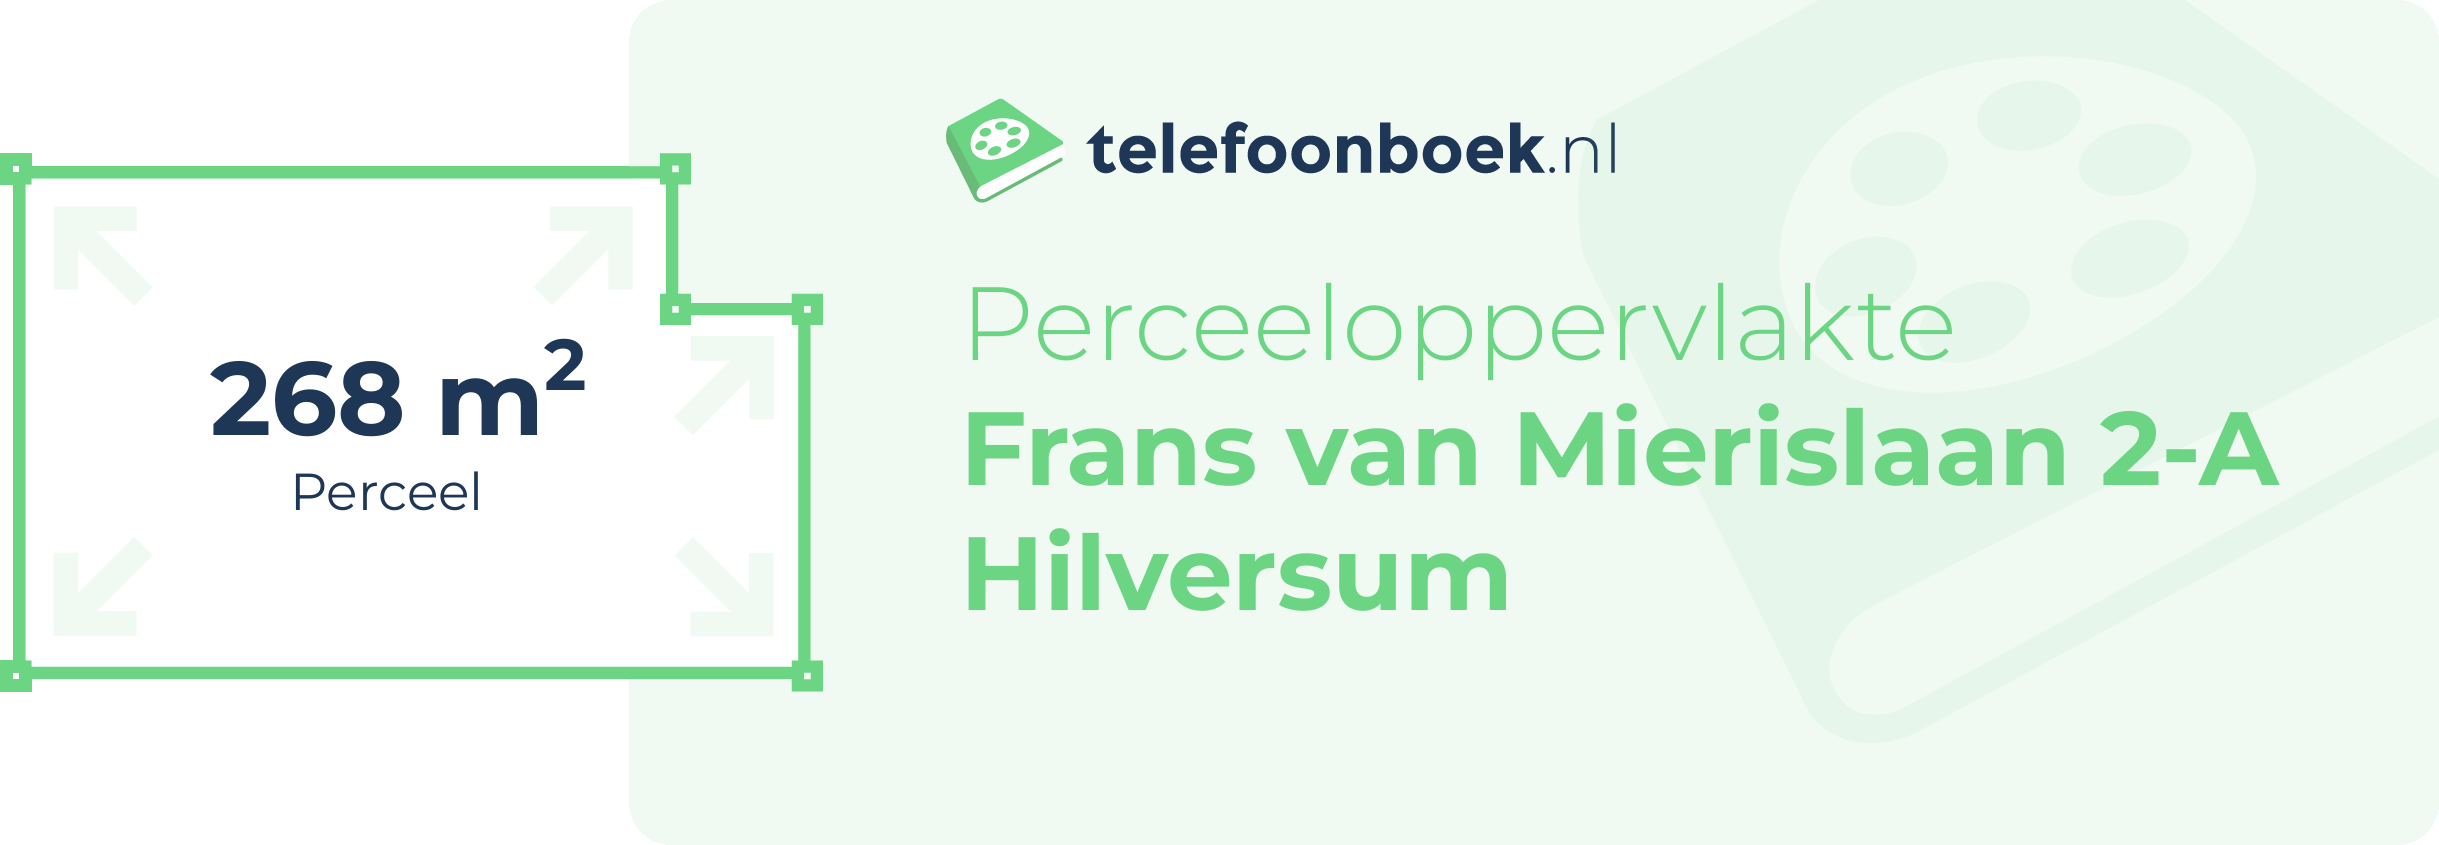 Perceeloppervlakte Frans Van Mierislaan 2-A Hilversum